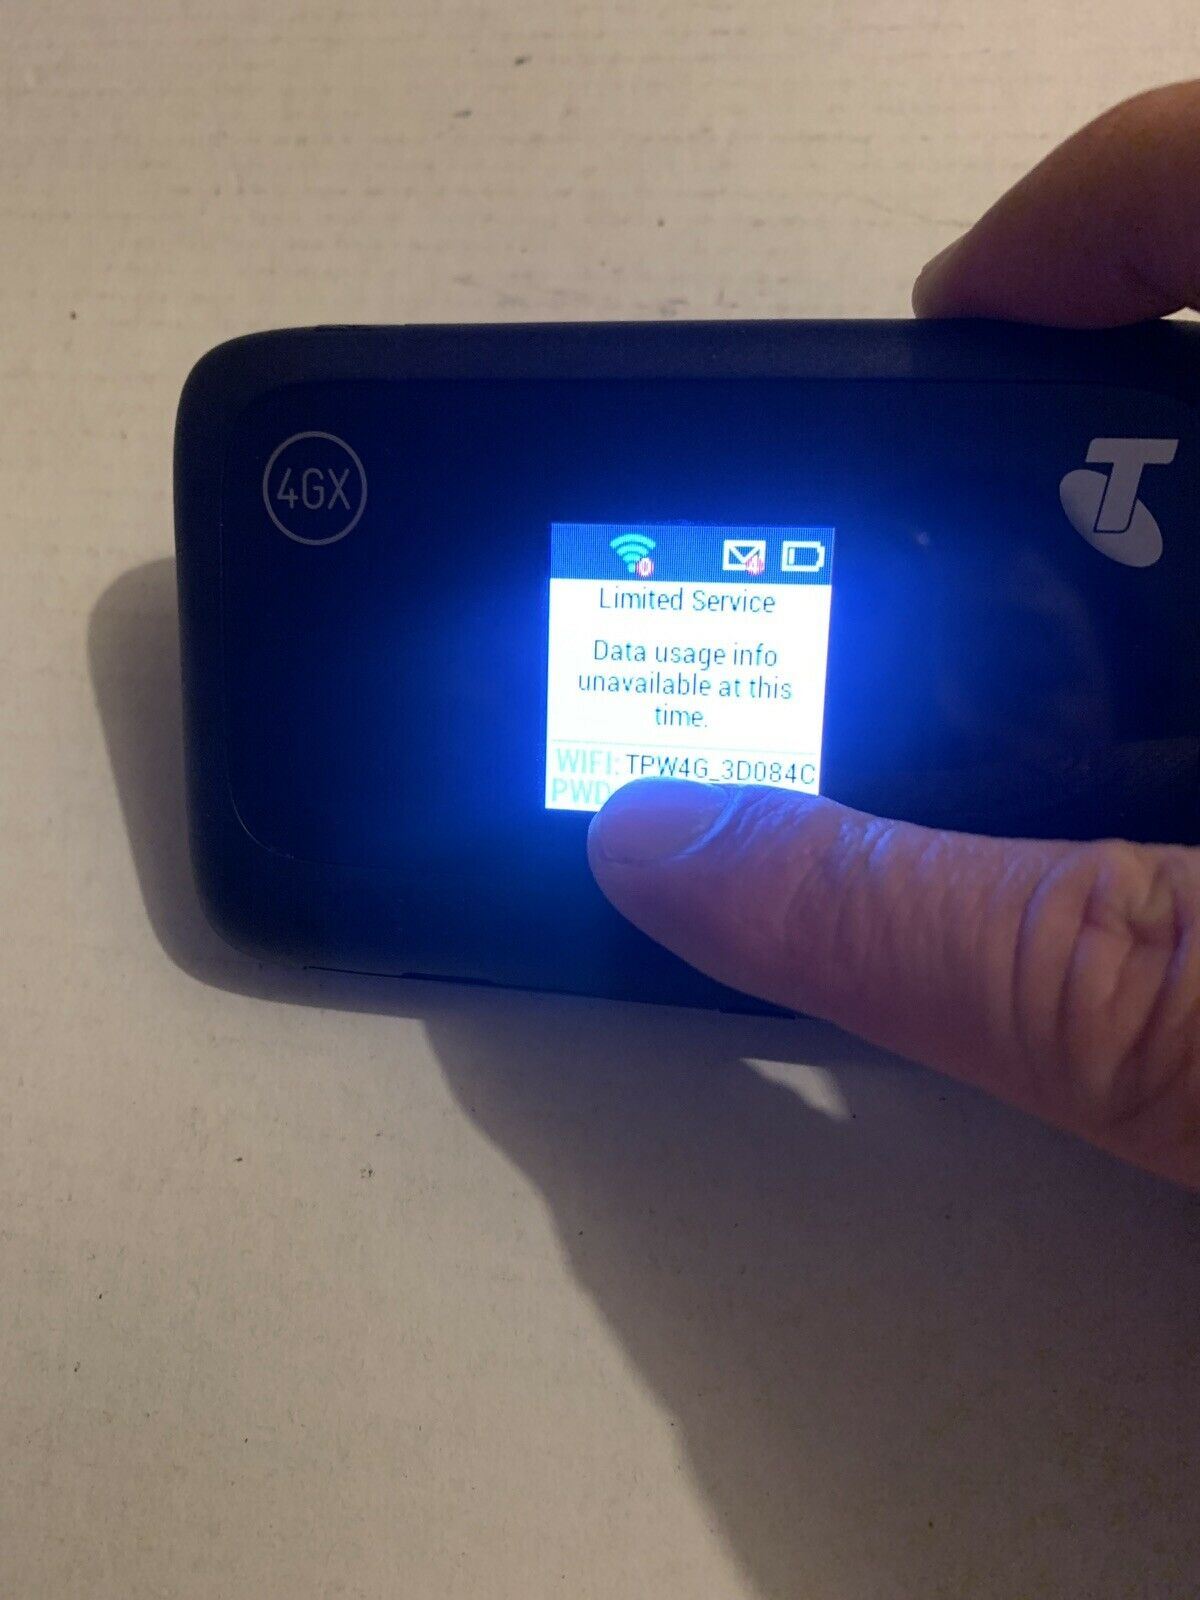 Telstra 4GX Pocket Wifi ZTE MF910Y 150Mbps 4G Mobile Hotspot *Telstra Locked*